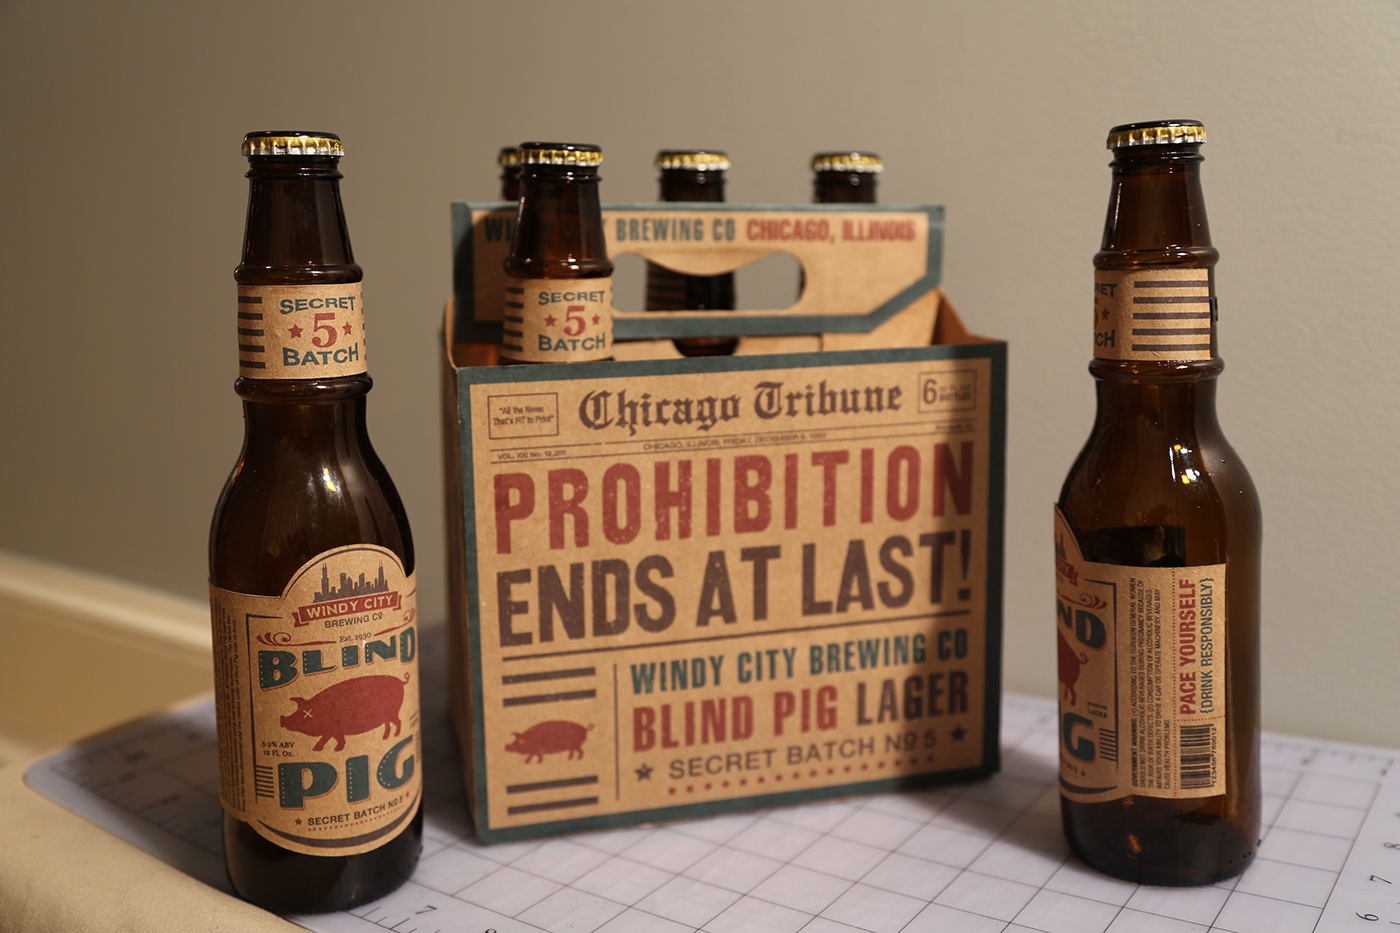 Blind Pig beer 6 pack prohibition